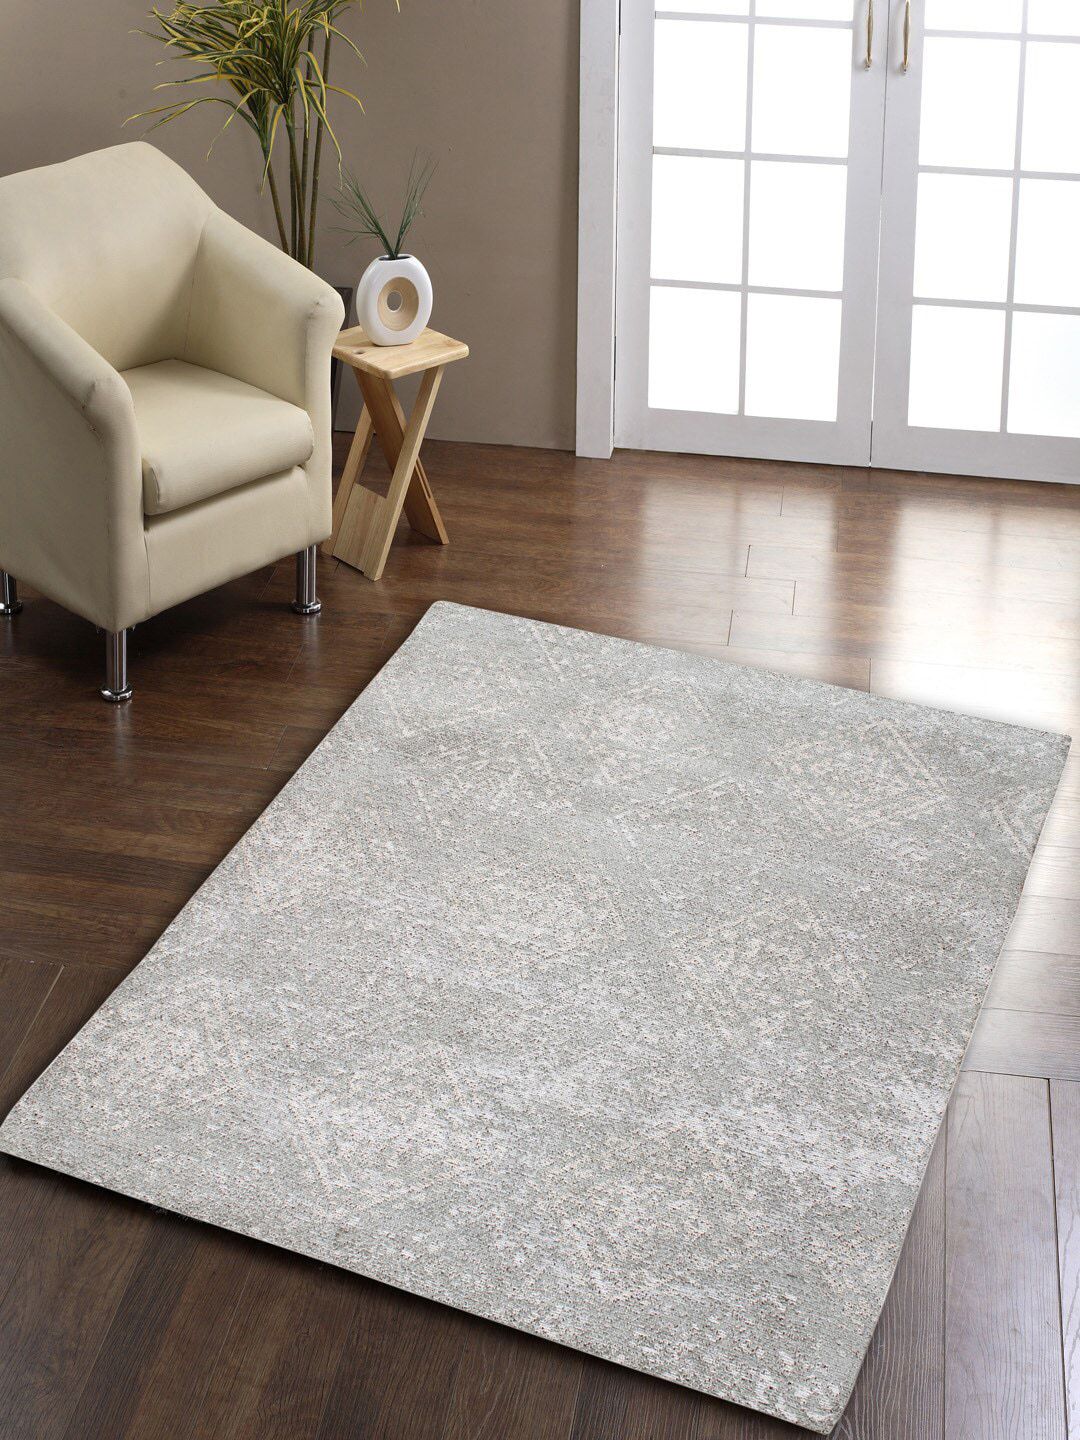 AVI Living Grey Geometric Jacquard Loomed Anti-Skid Carpet Price in India